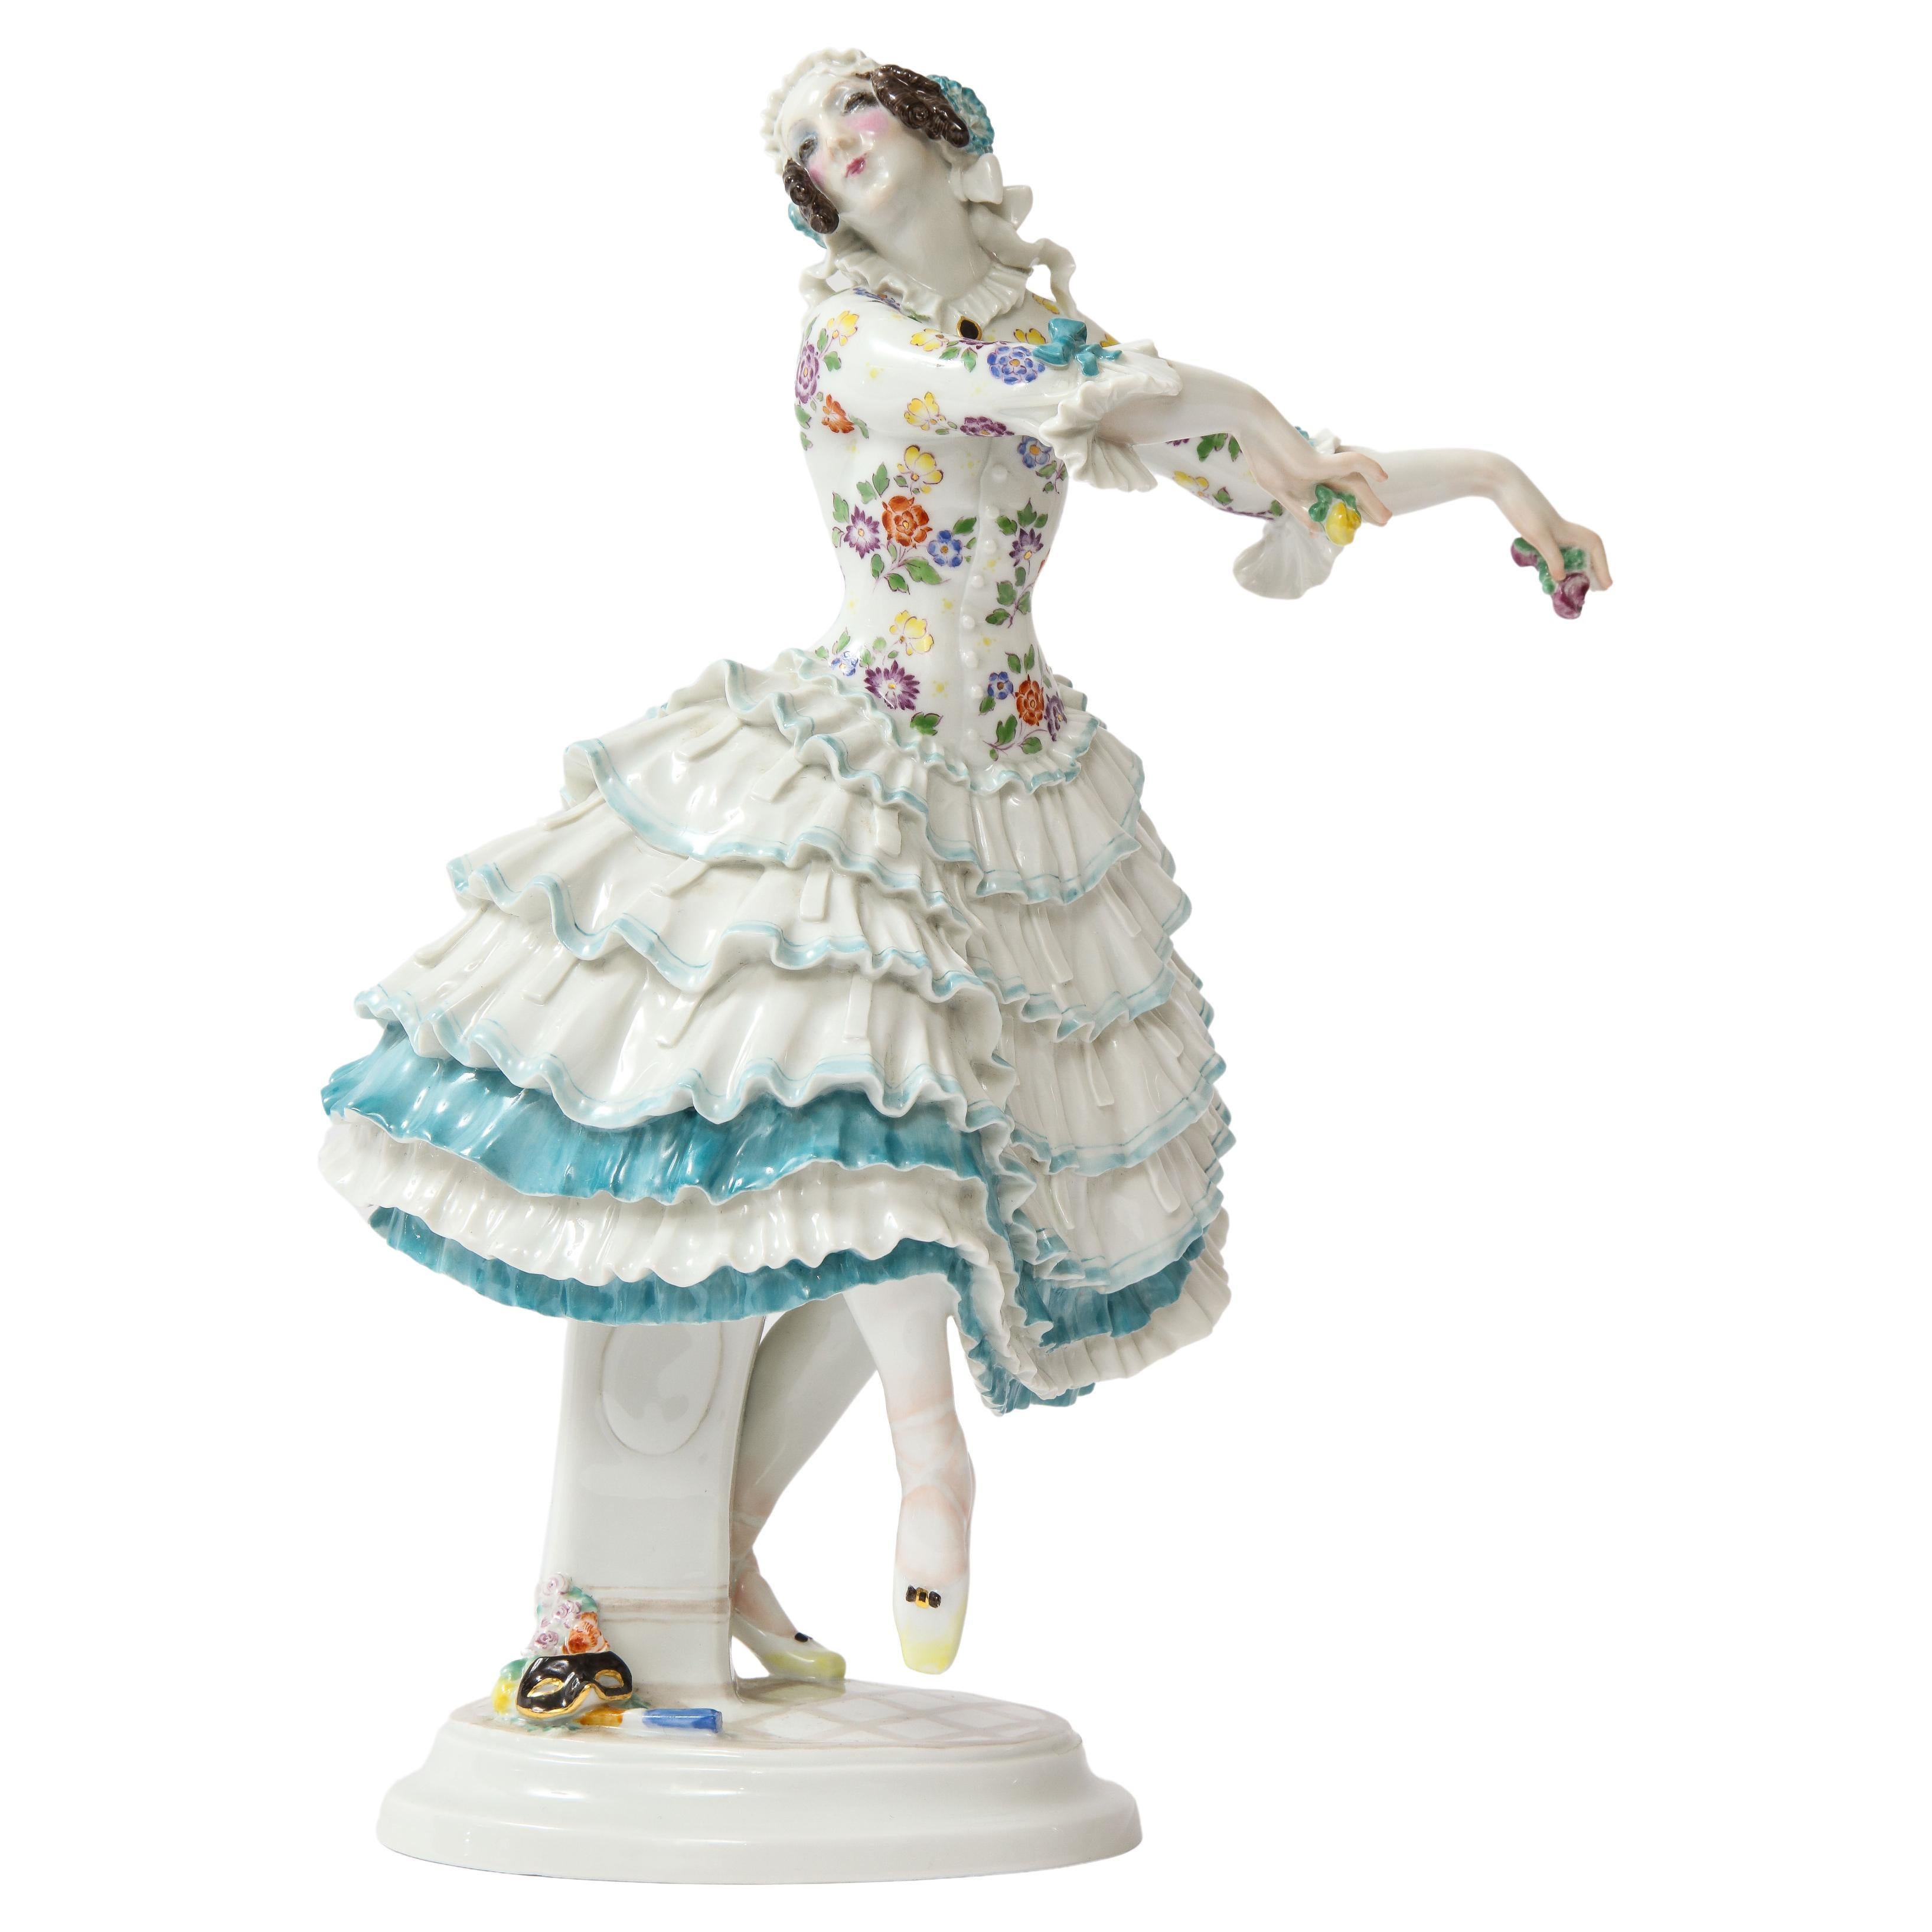 Bailarina de ballet "Chiarina" del Ballet Ruso de Paul Scheurich, Meissen, s. XX